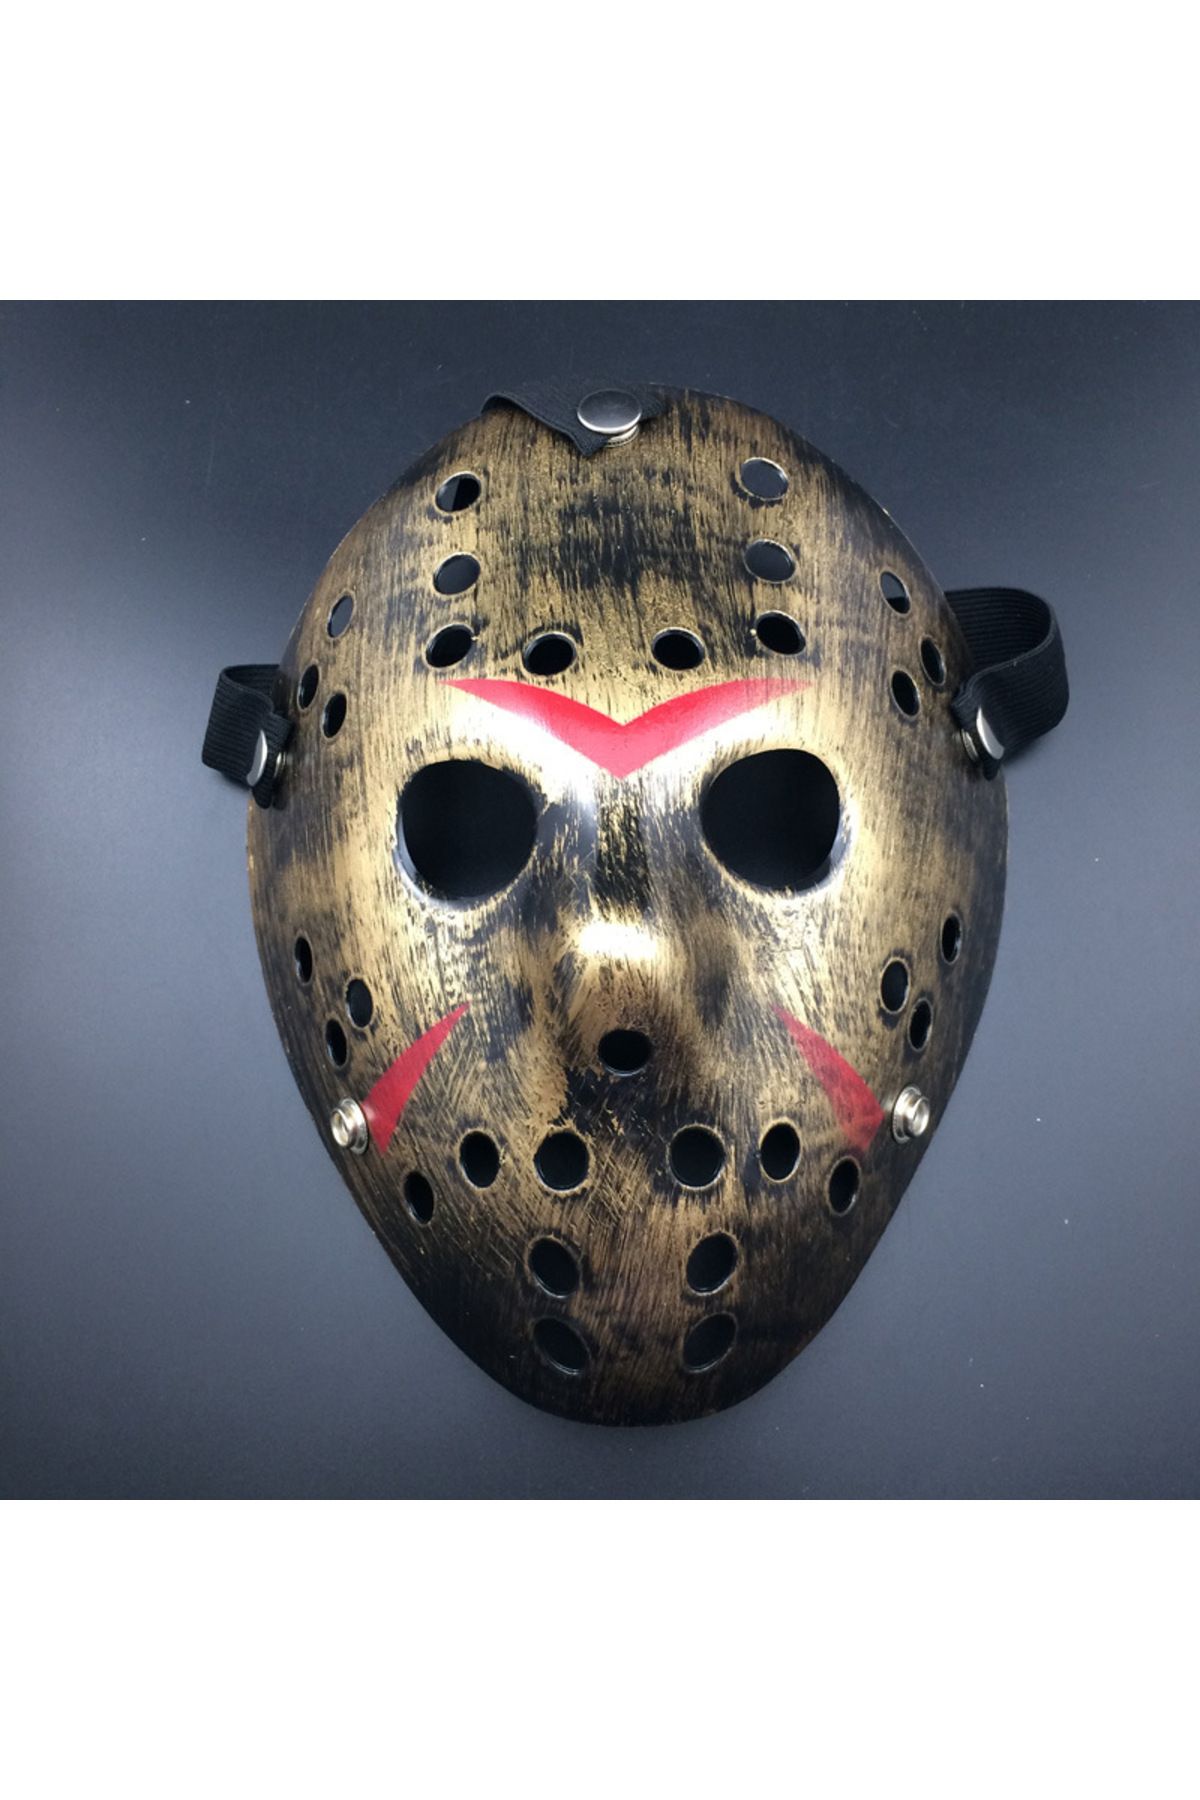 MAGAZZINO DELLAMORE Bakır Renk Kırmızı Çizgili Tam Yüz Hokey Jason Maskesi Hannibal Maskesi